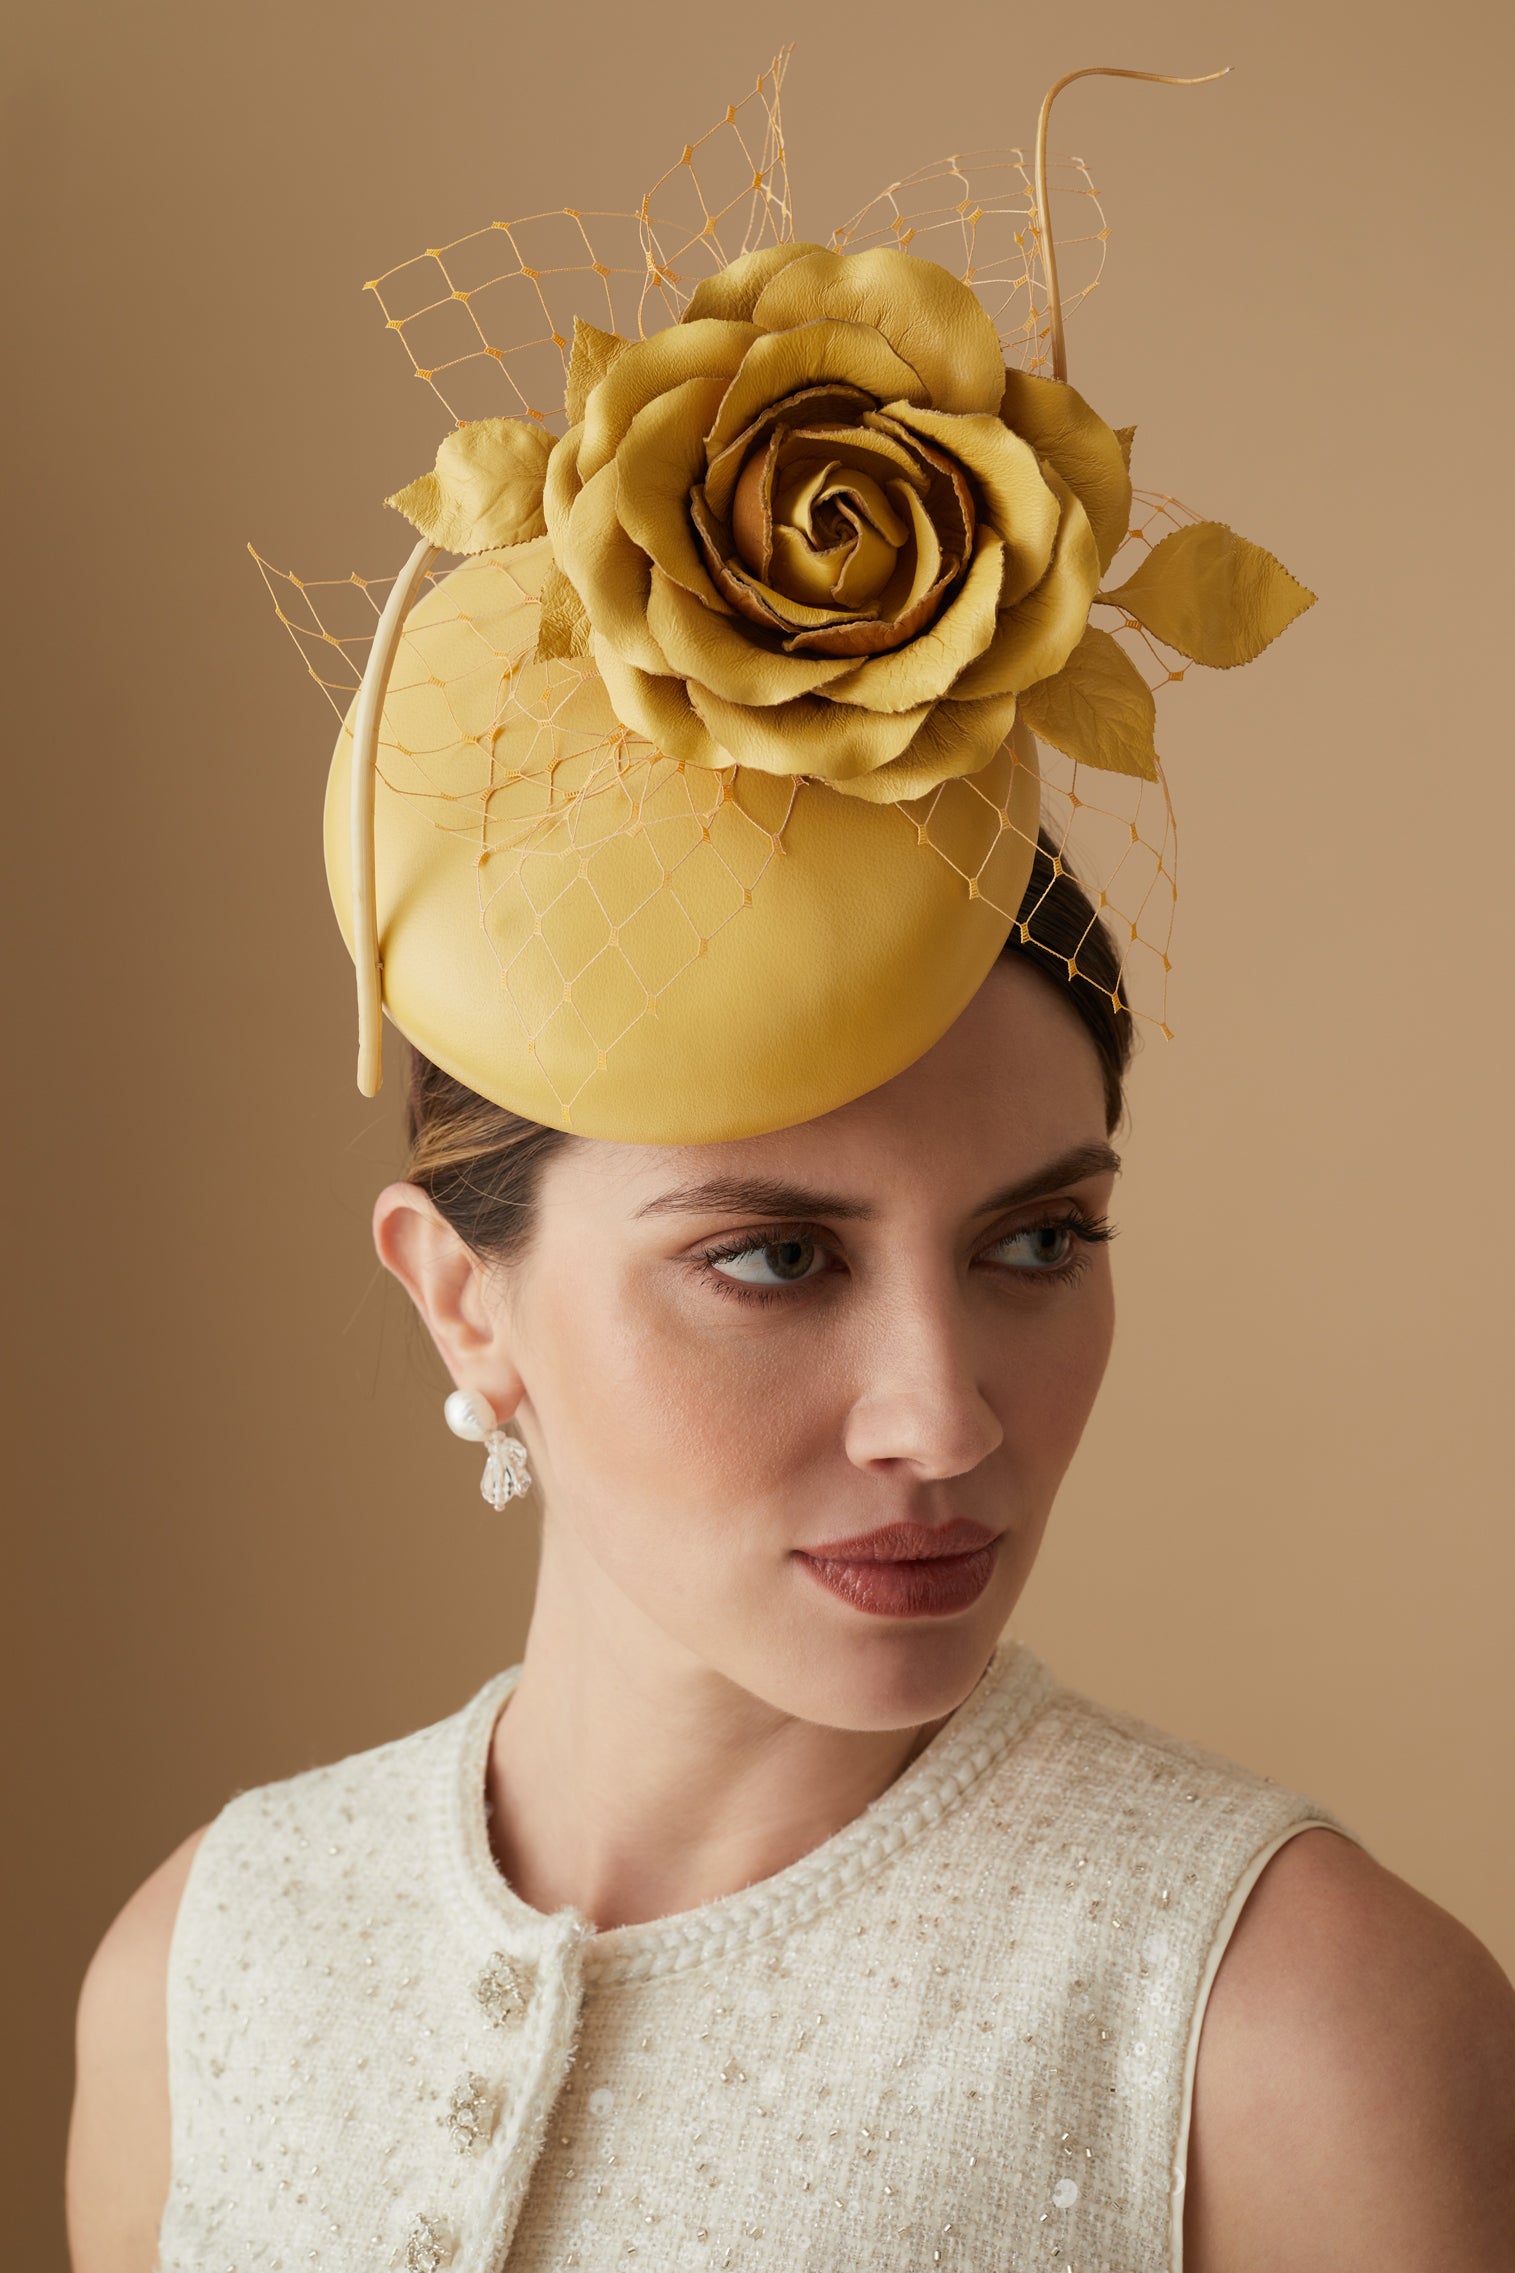 Rose Bud Yellow Leather Percher Hat - New Season Women's Hats - Lock & Co. Hatters London UK